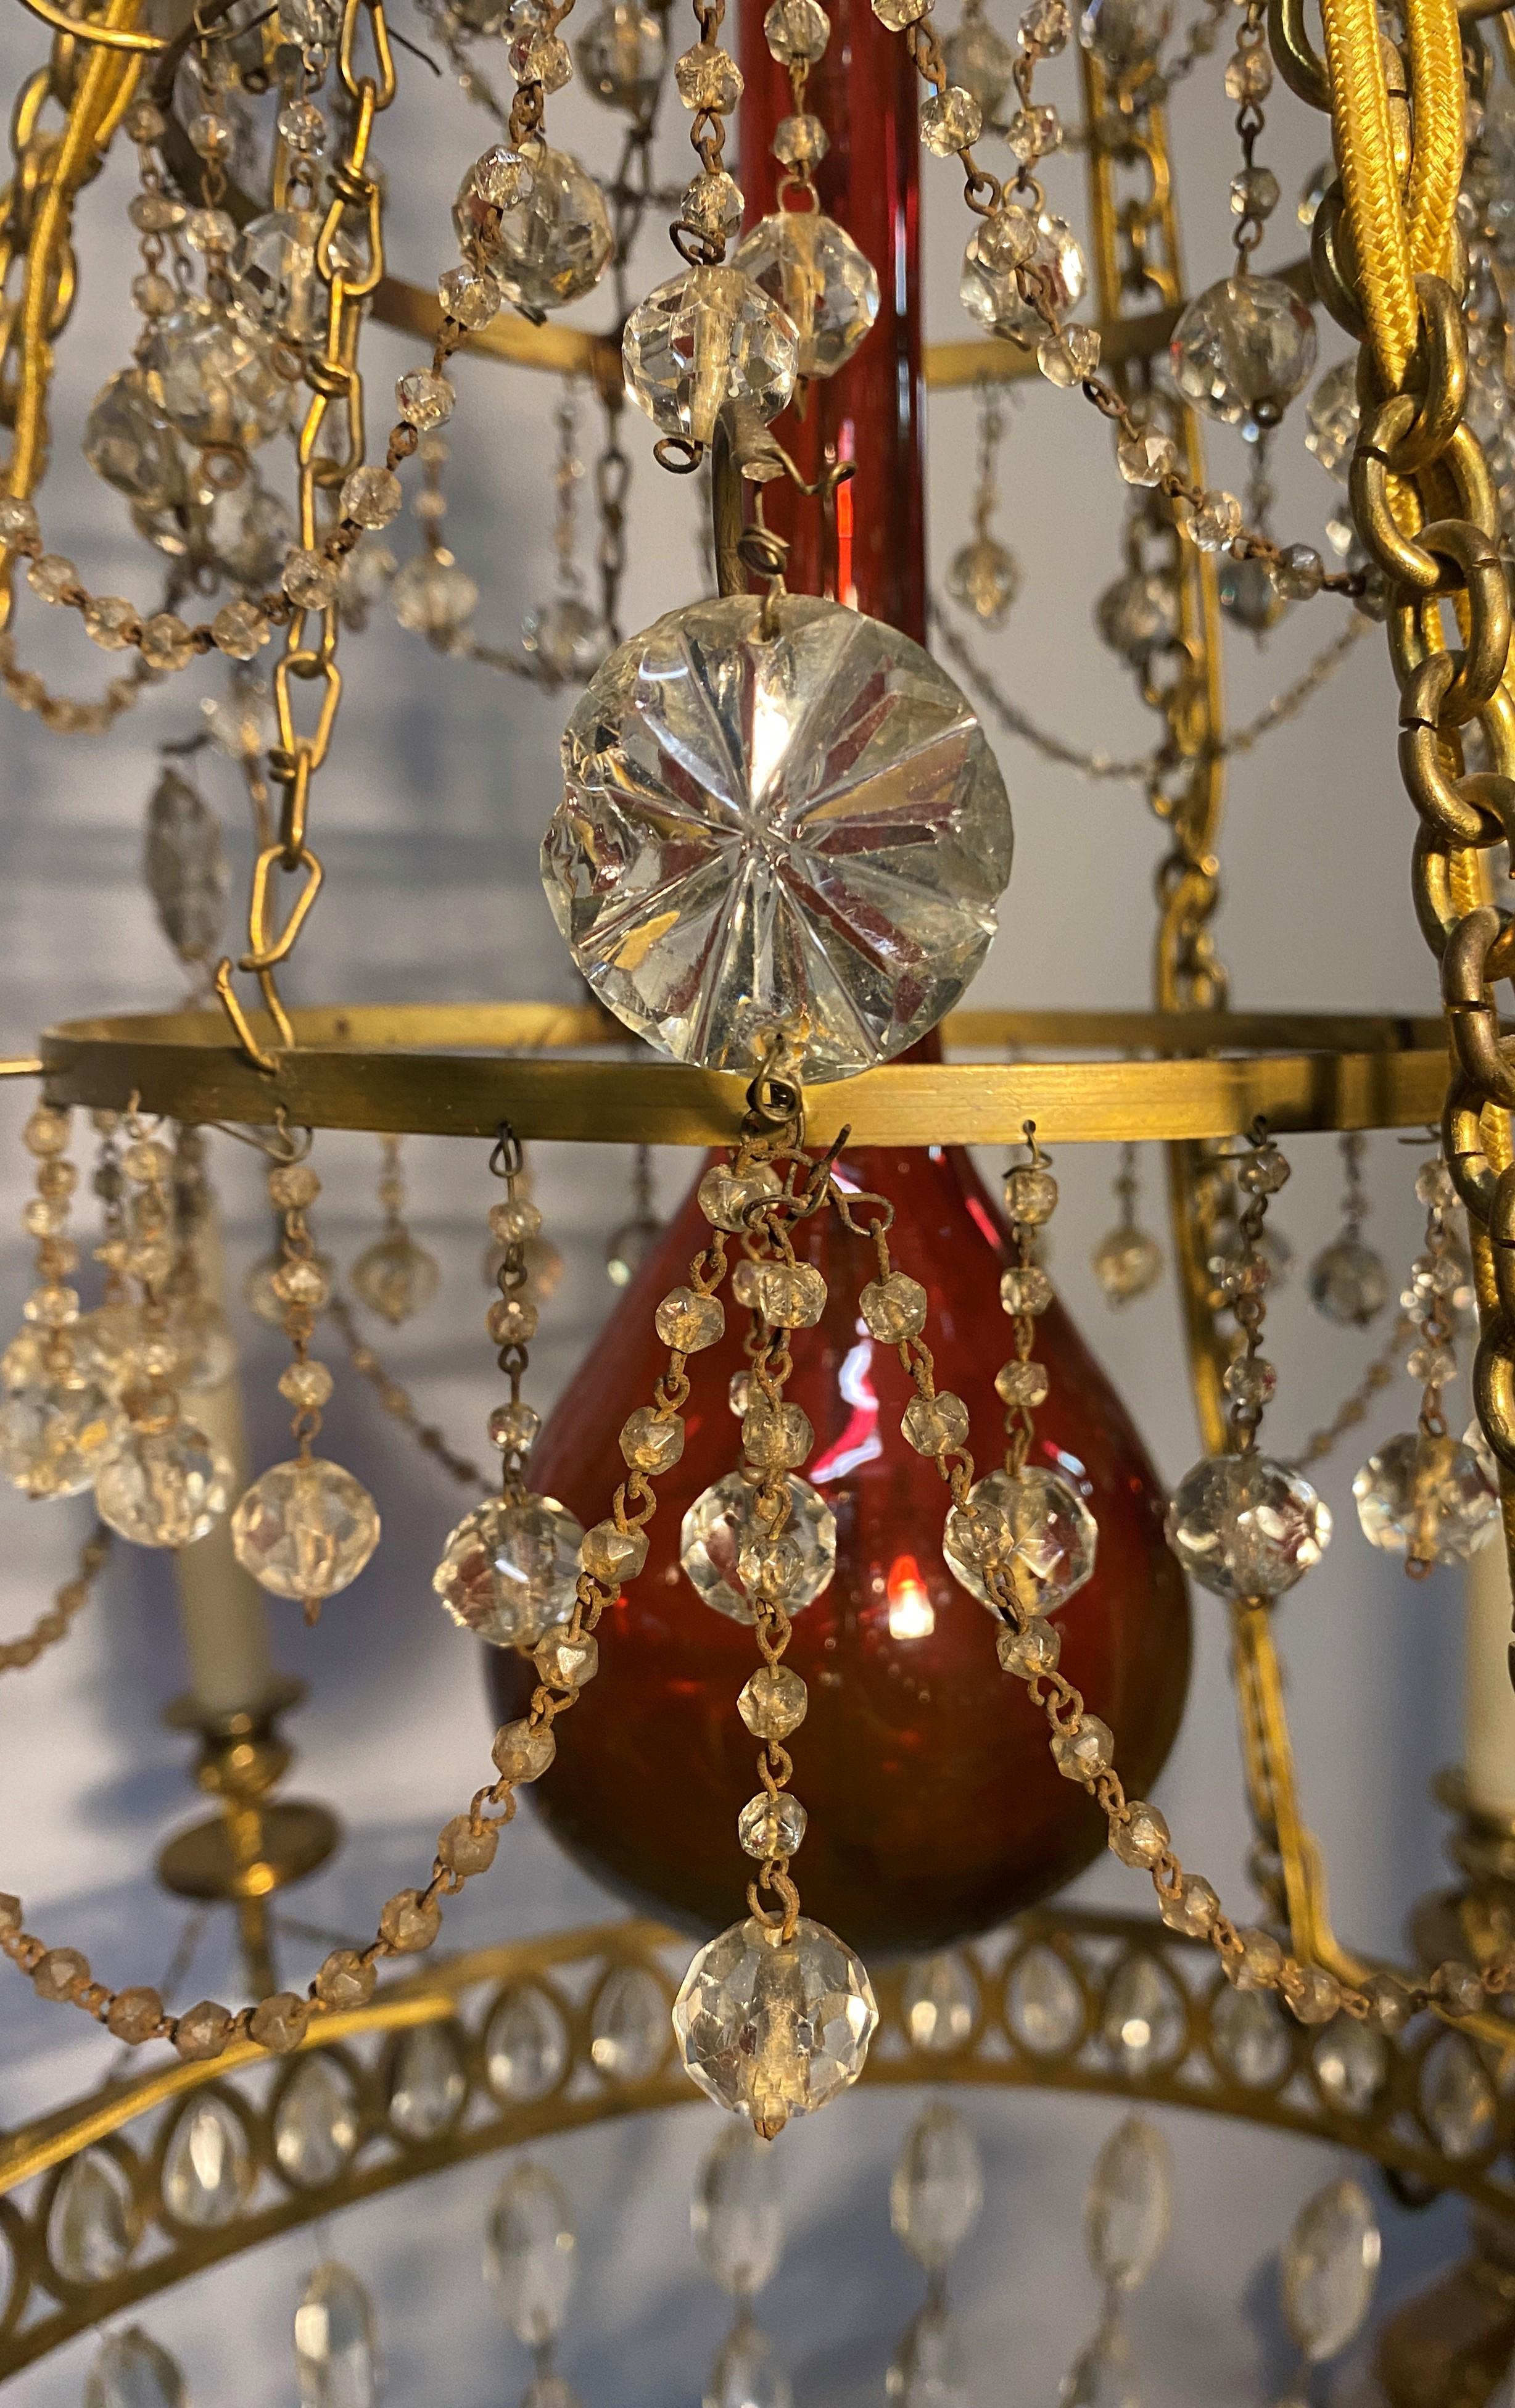 Magnifique lustre russe à six lumières datant de la fin du 18ème siècle. Les éléments décoratifs de ce lustre rappellent ceux qui étaient fabriqués à Saint-Pétersbourg à la toute fin du XVIIIe siècle.
La forme générale, la structure aérée et la